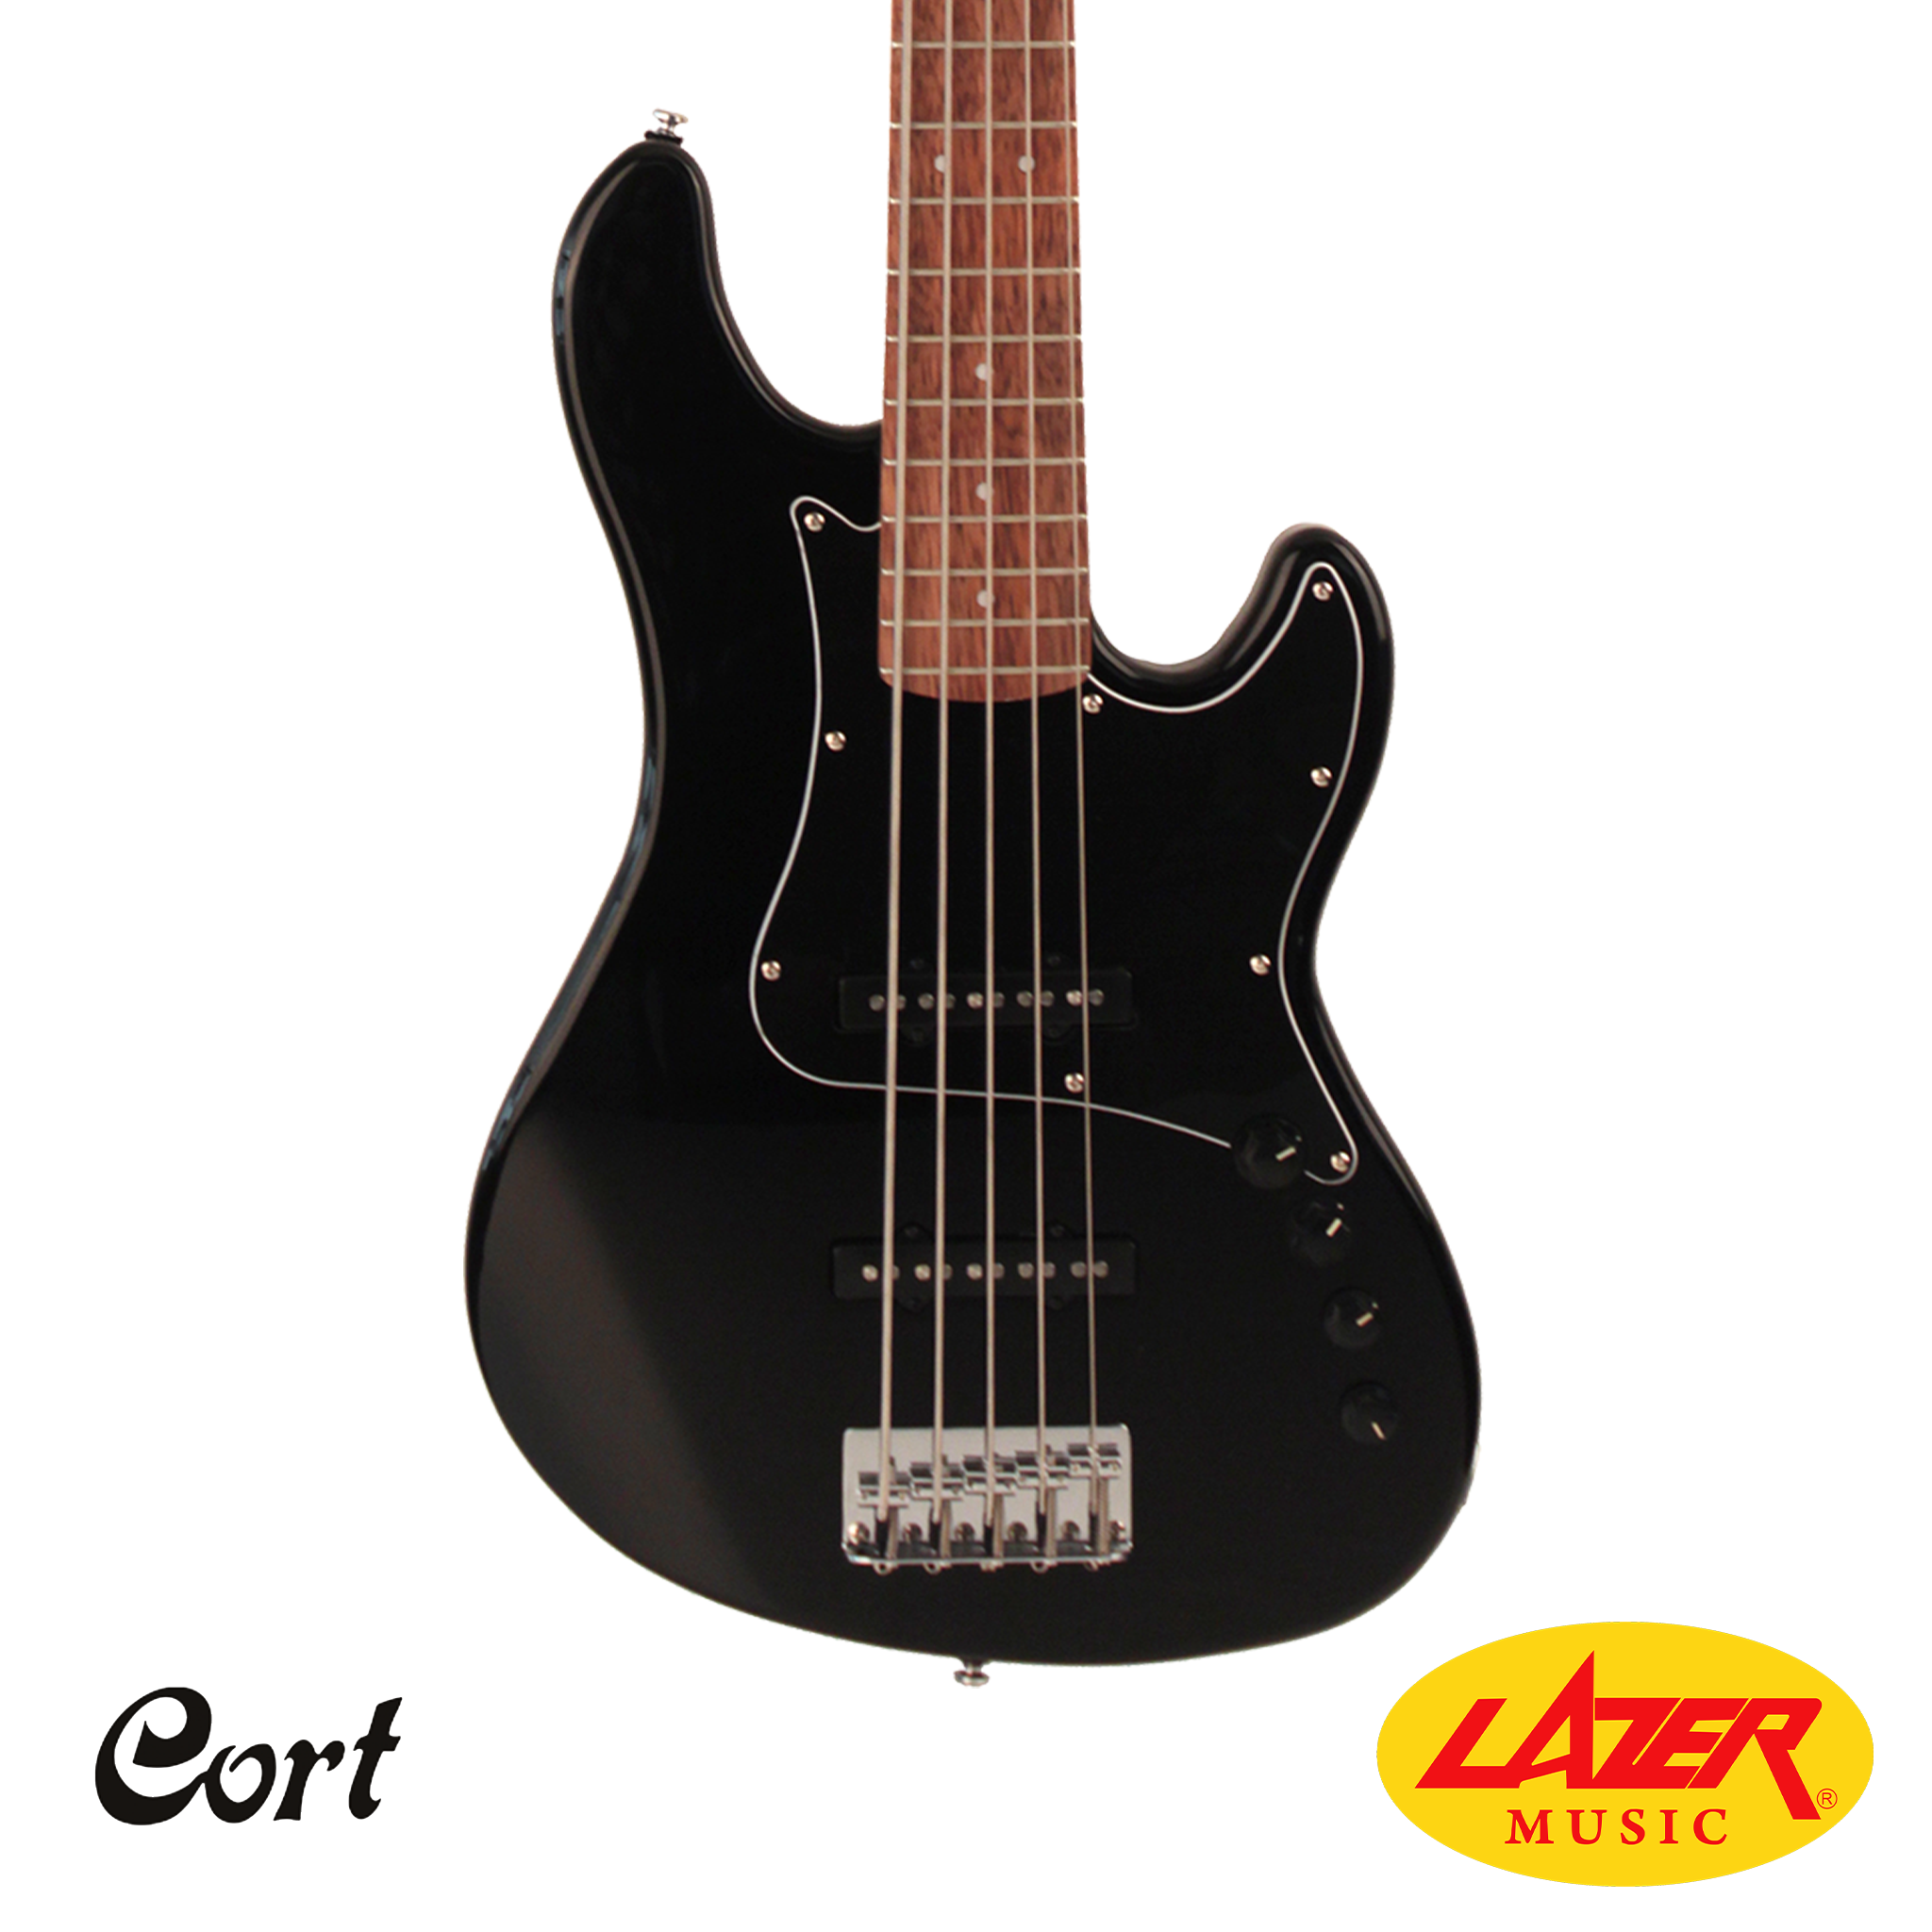 Guitare Basse CORT Cort bass guitar action PJ Achat / vente - LE